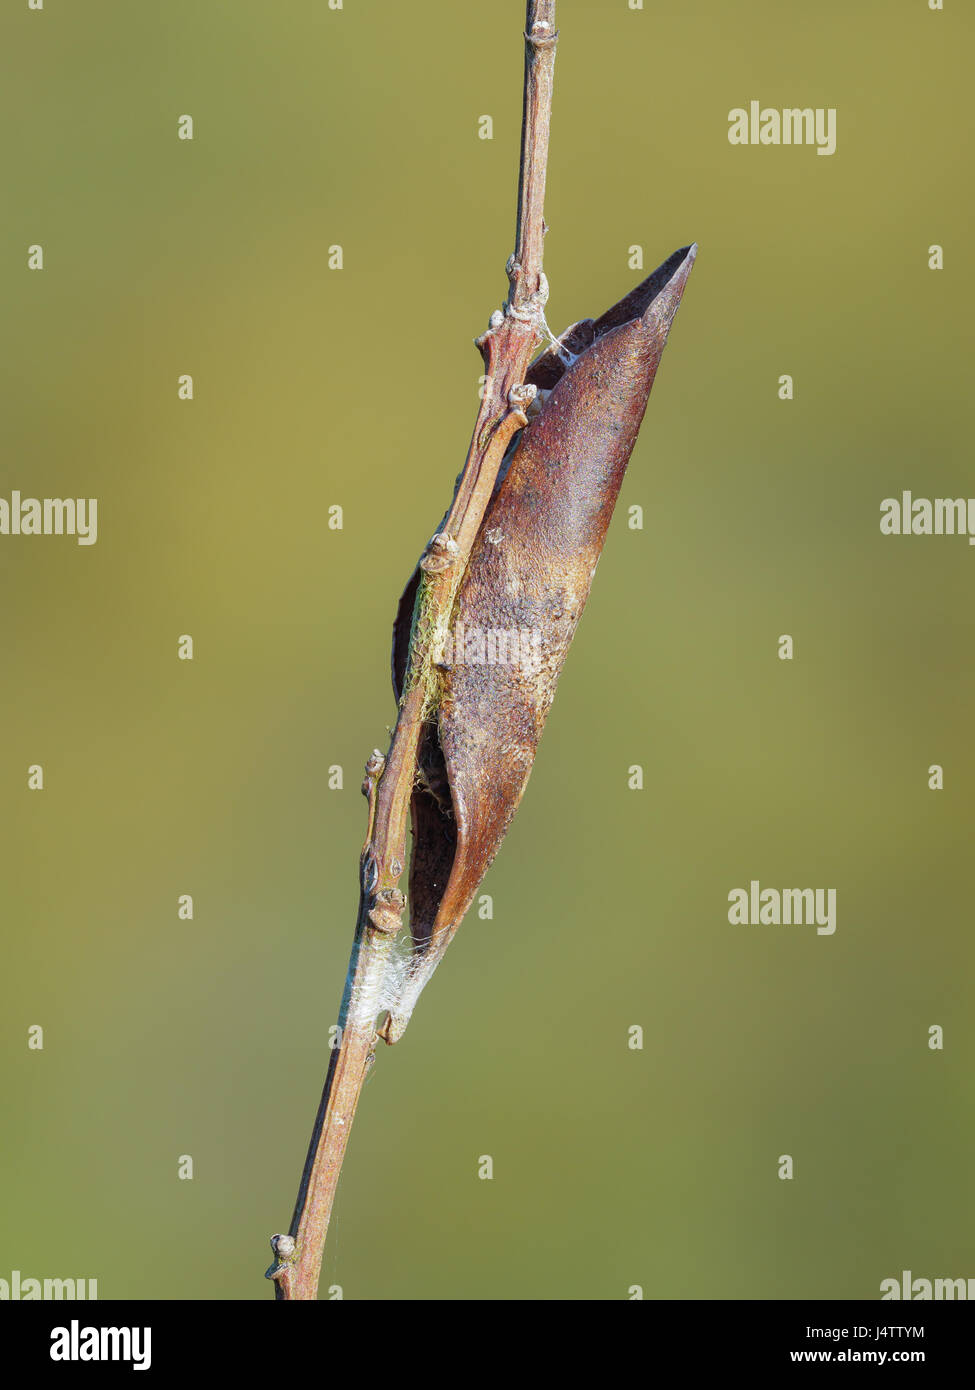 Ein gewelltes Blatt an einem Zweig mit Seide befestigt dient als Unterschlupf, eine Spinne Ei Sac. Stockfoto